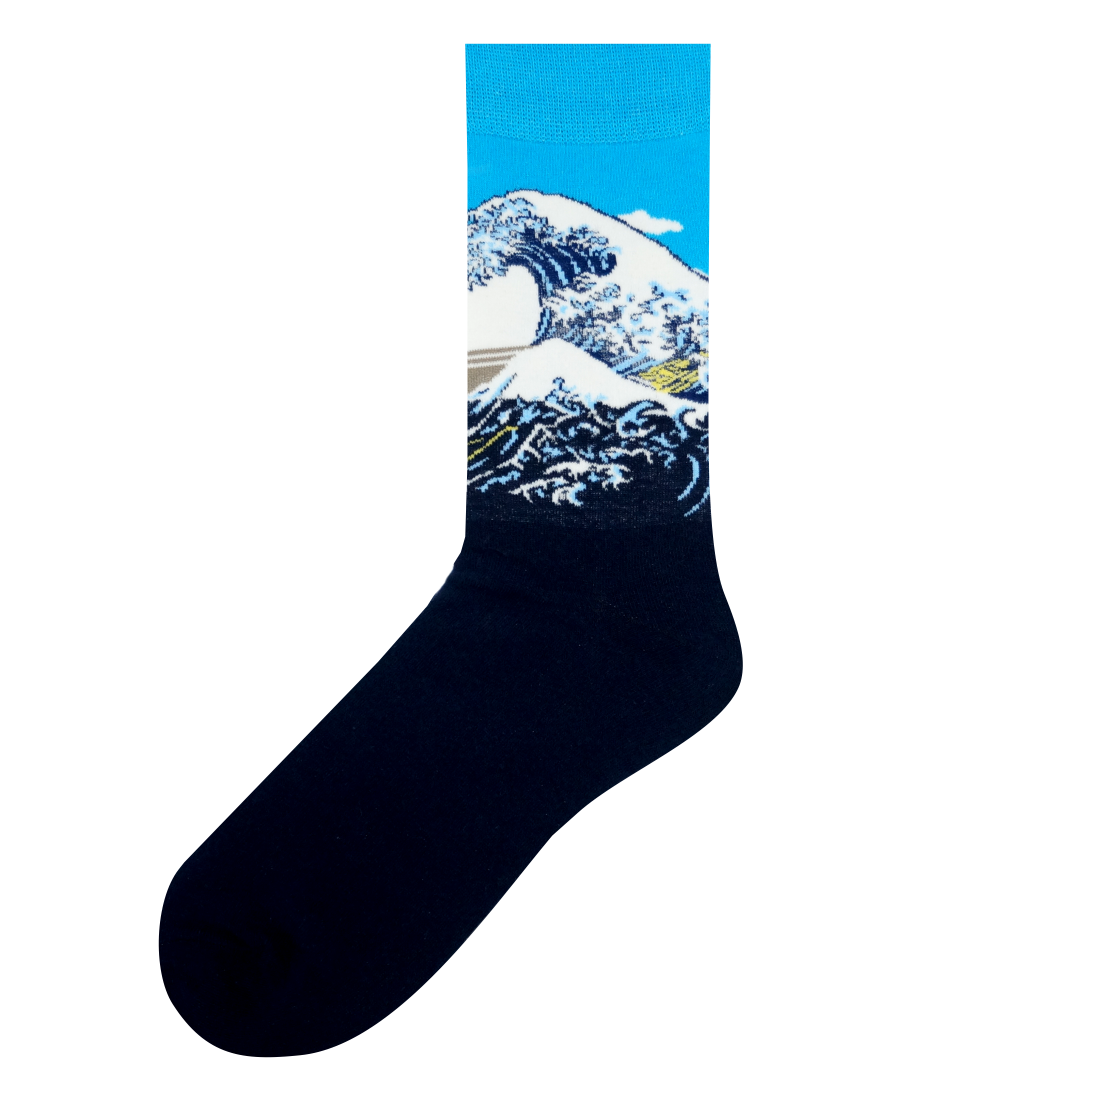 Medias Locas calcetines divertidos de diseño de gran ola Freaky Socks. La gran ola de Kanagawa